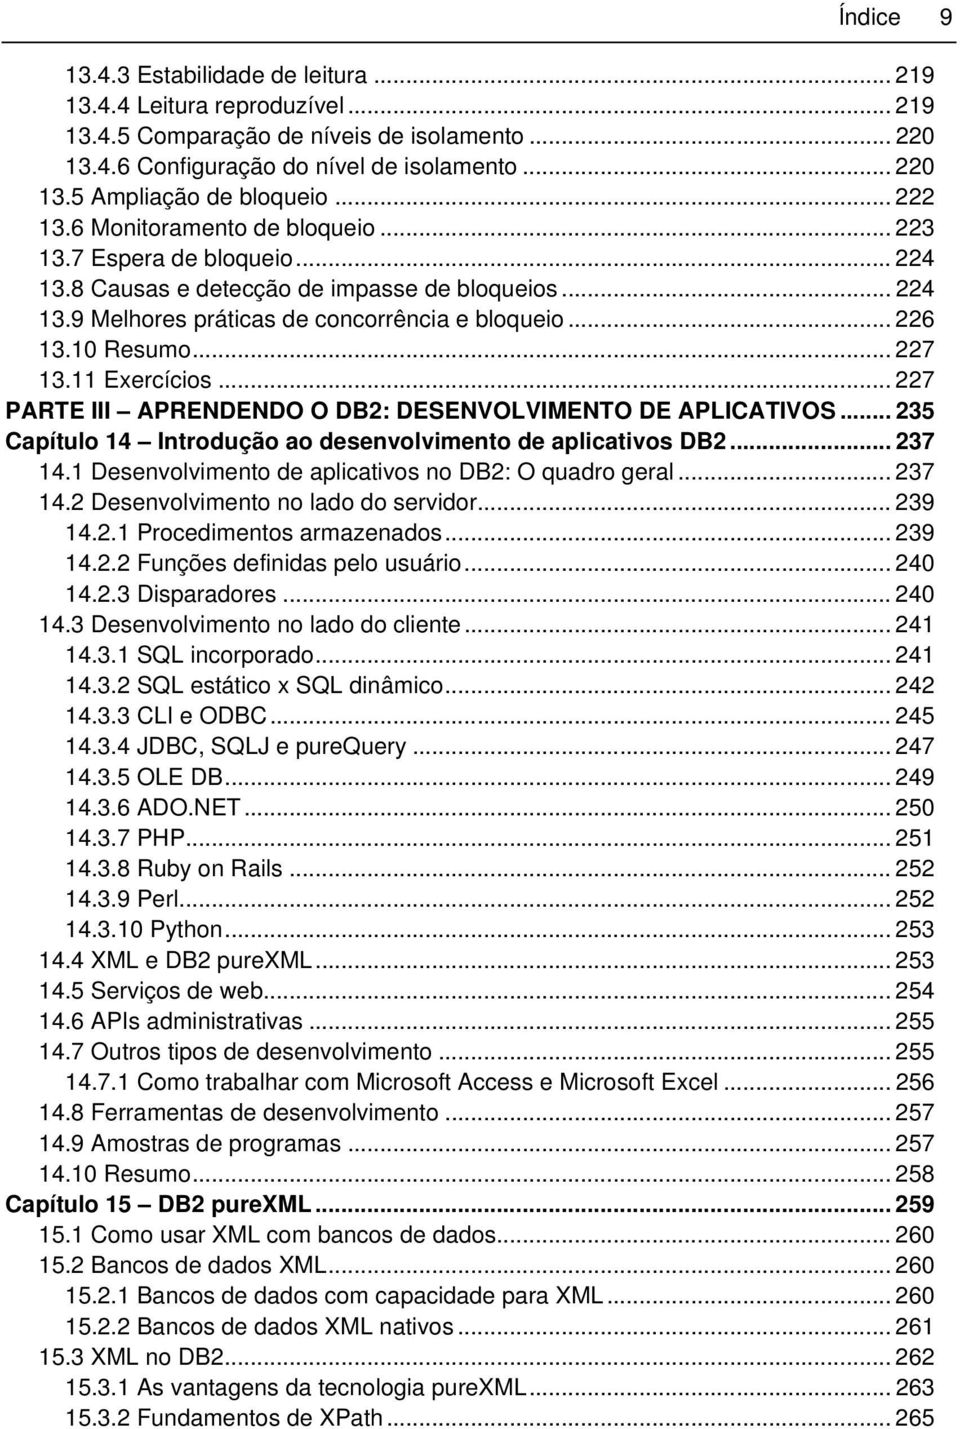 .. 227 13.11 Exercícios... 227 PARTE III APRENDENDO O DB2: DESENVOLVIMENTO DE APLICATIVOS... 235 Capítulo 14 Introdução ao desenvolvimento de aplicativos DB2... 237 14.